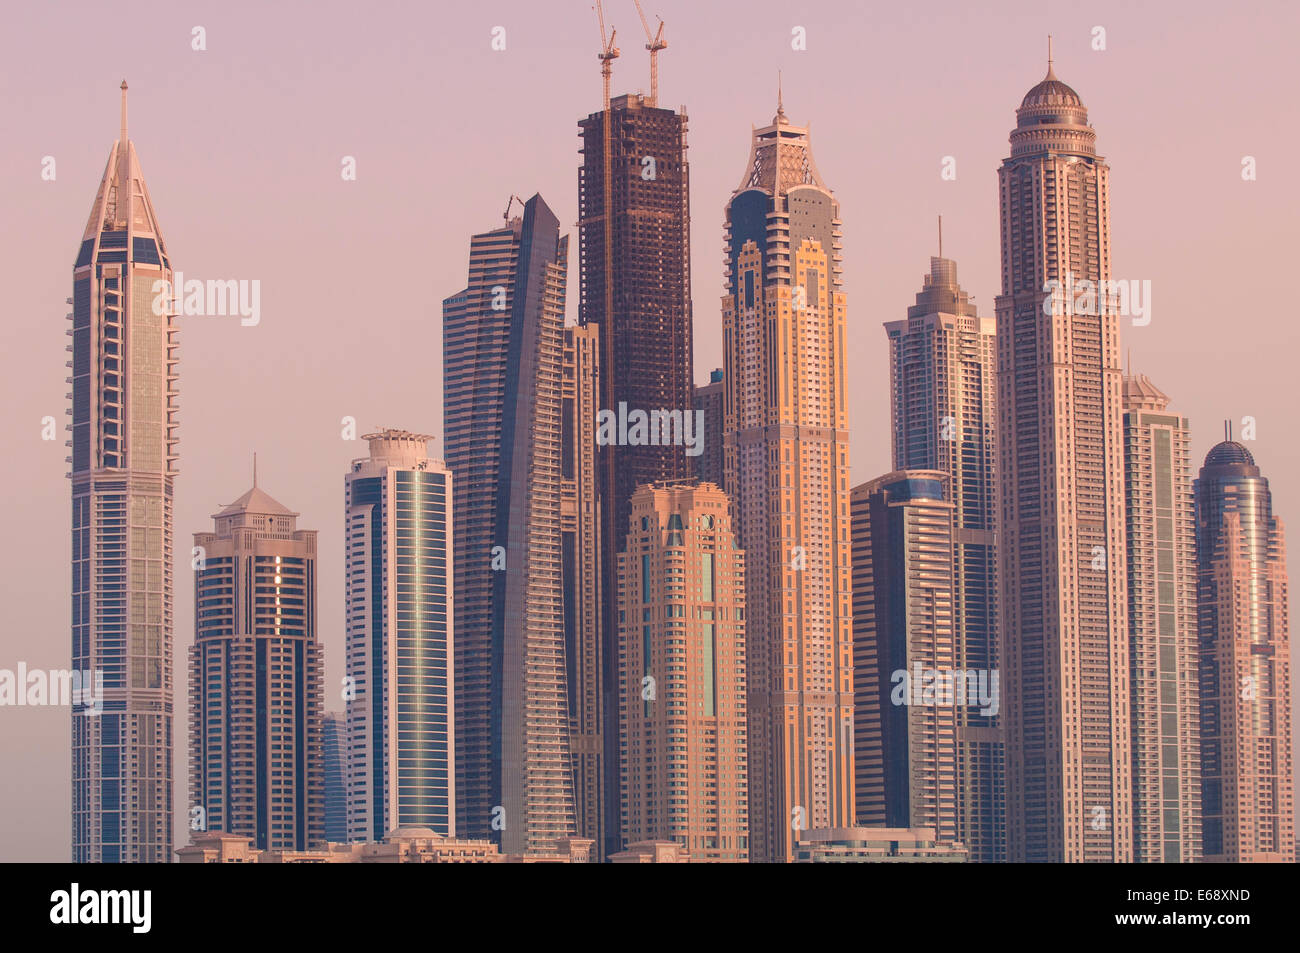 Un tramonto skyline cityscape di edifici torri intorno alla Marina di Dubai, Dubai, Emirati arabi uniti (EAU). Foto Stock